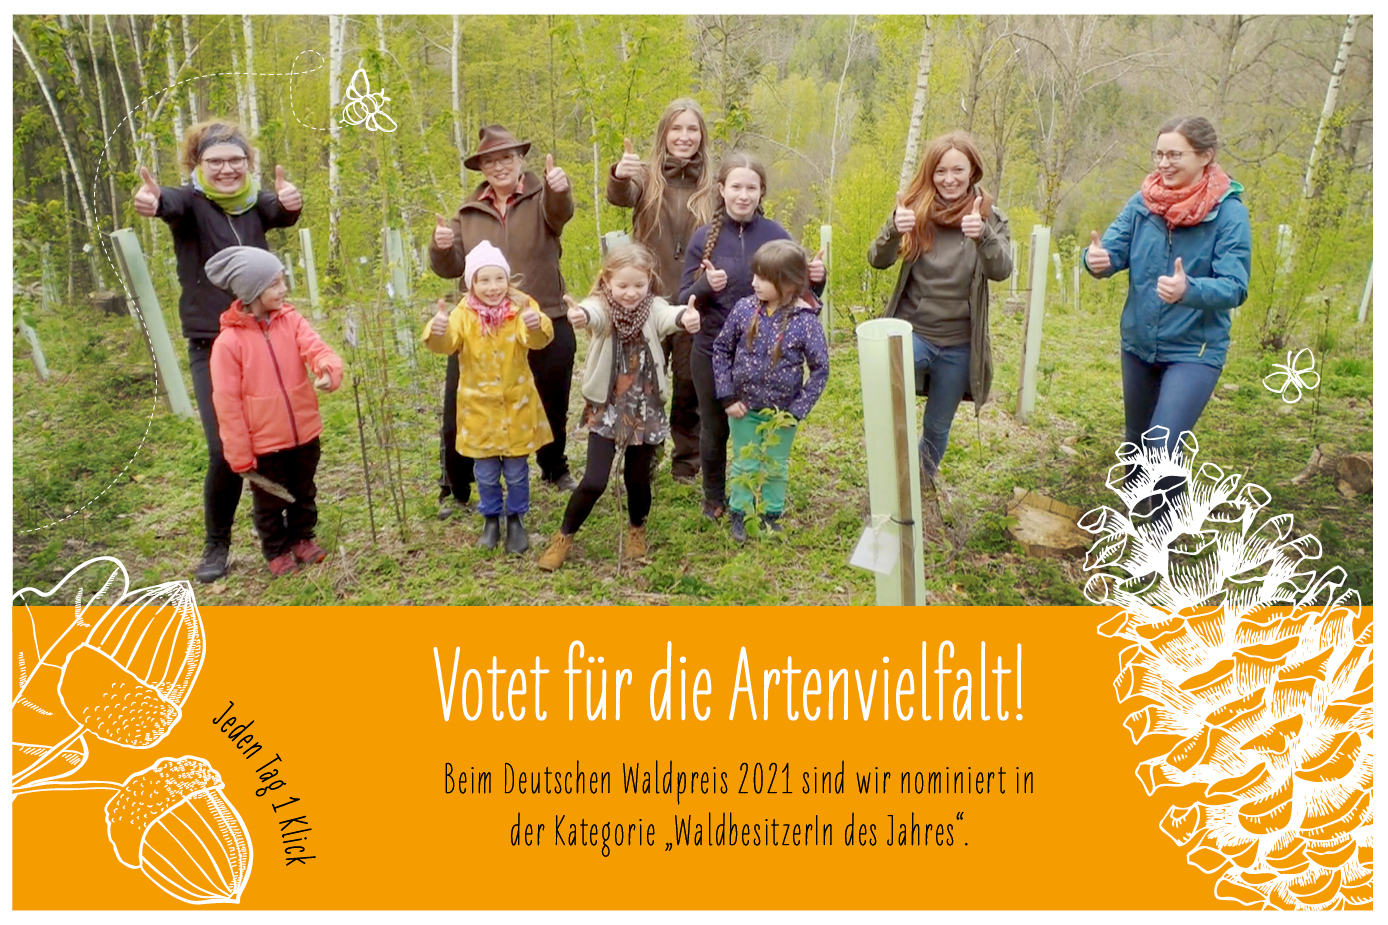 Der Deutsche Waldpreis - Votet für die Artenvielfalt